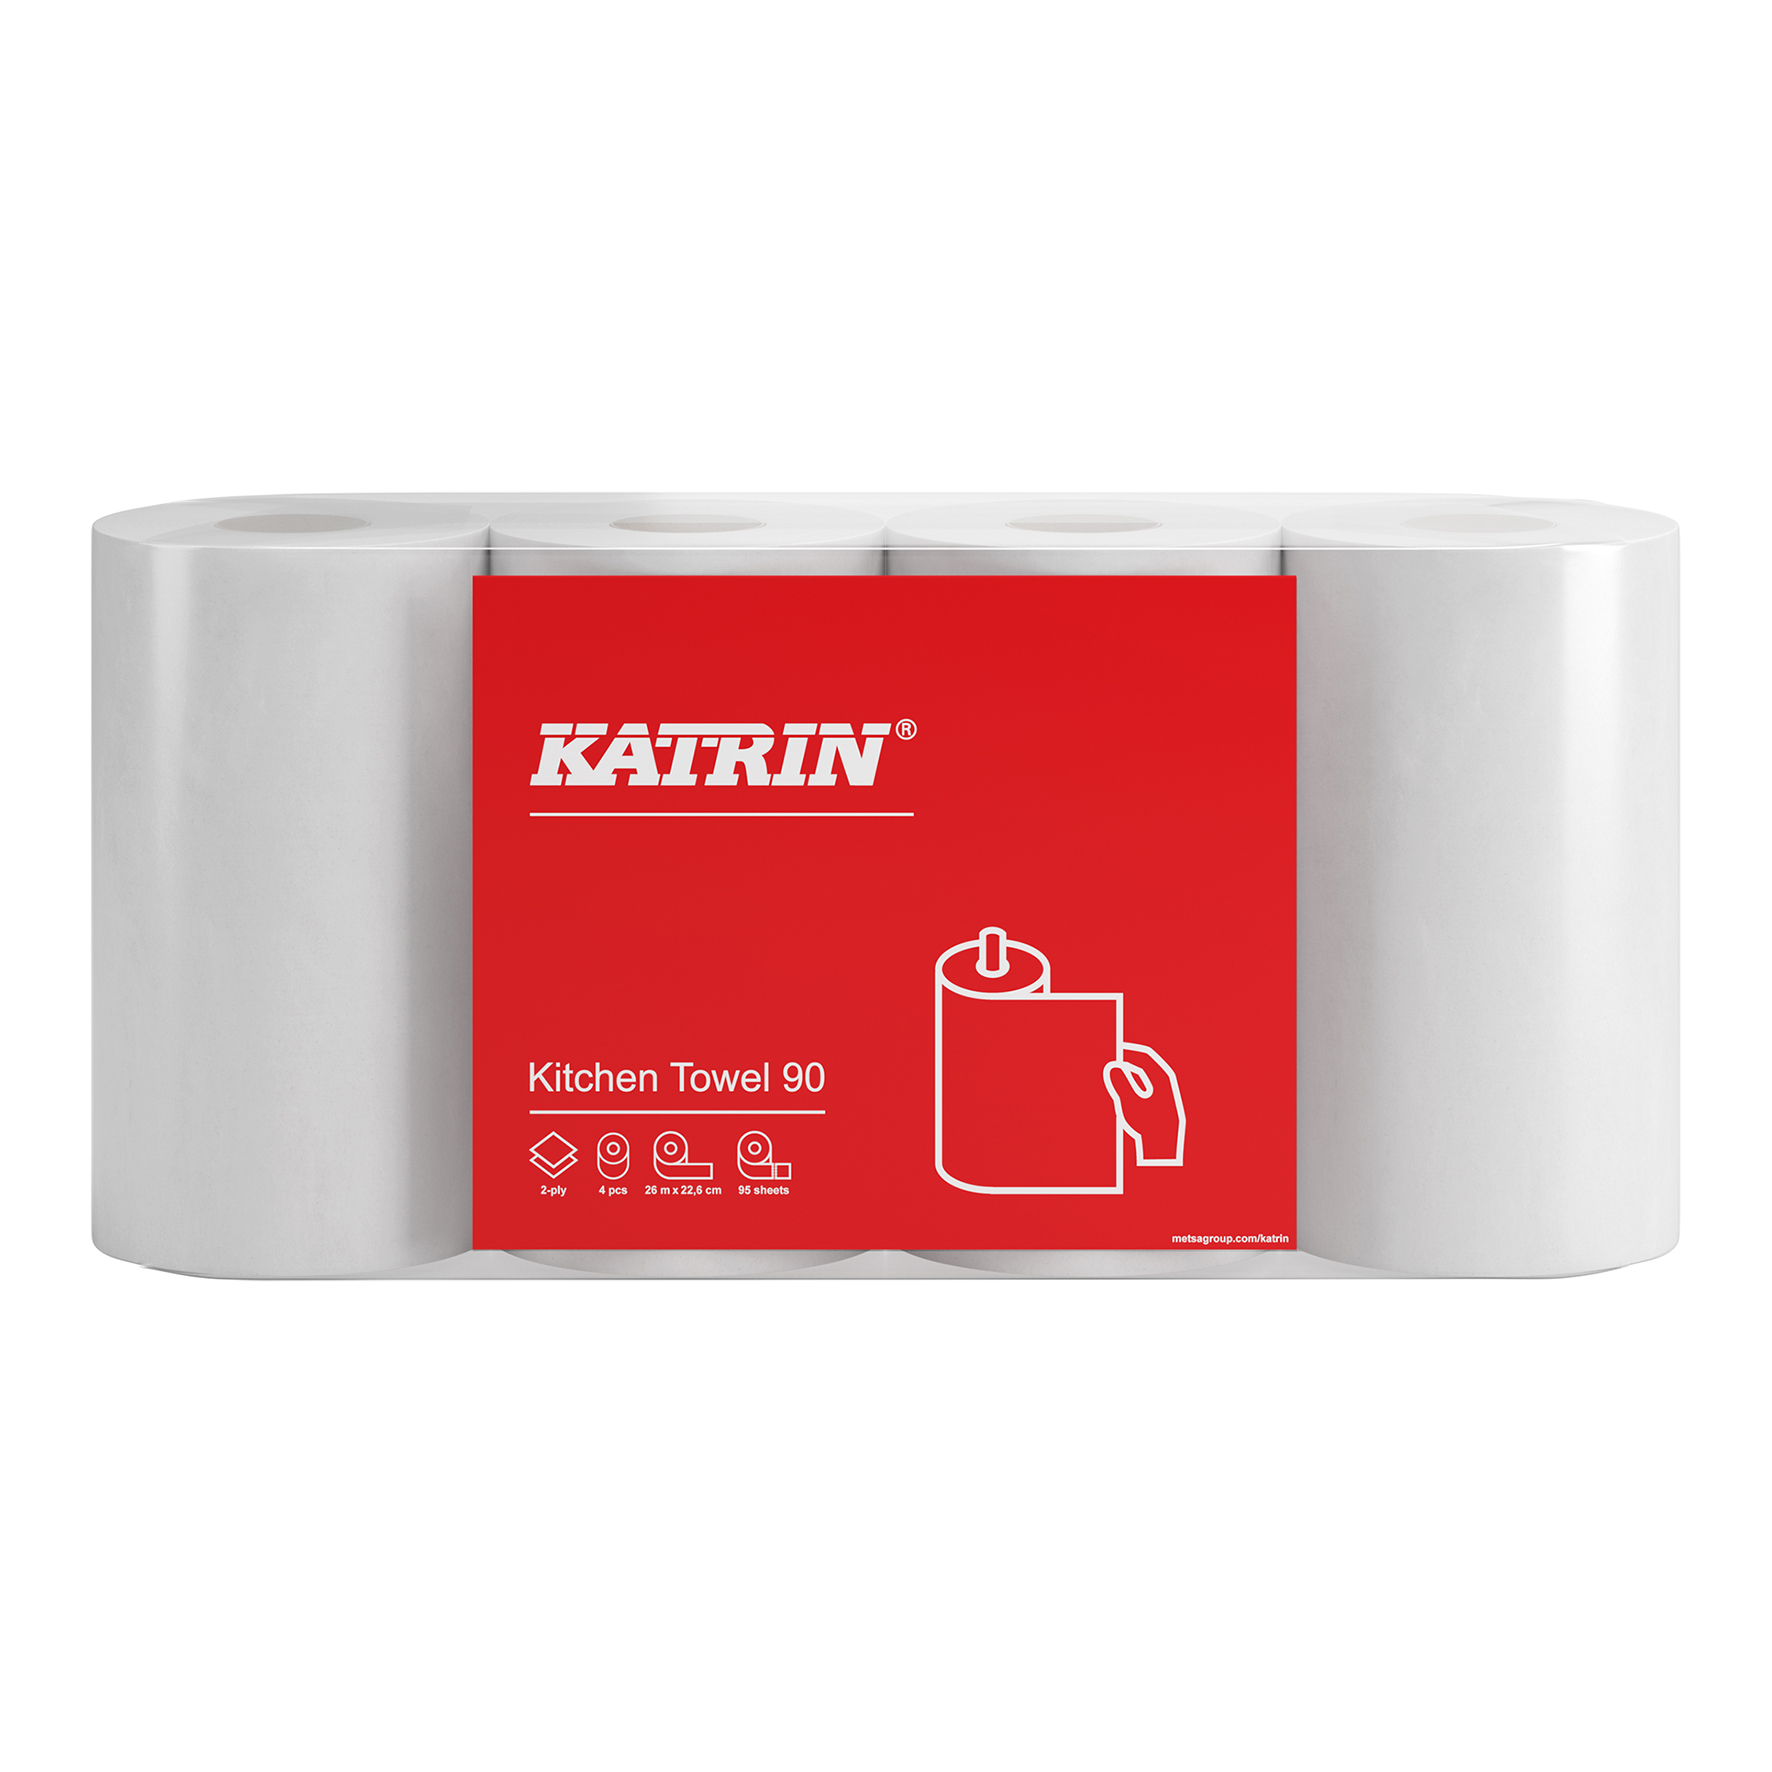 [8551608] Köksrulle Katrin Basic Kitchen